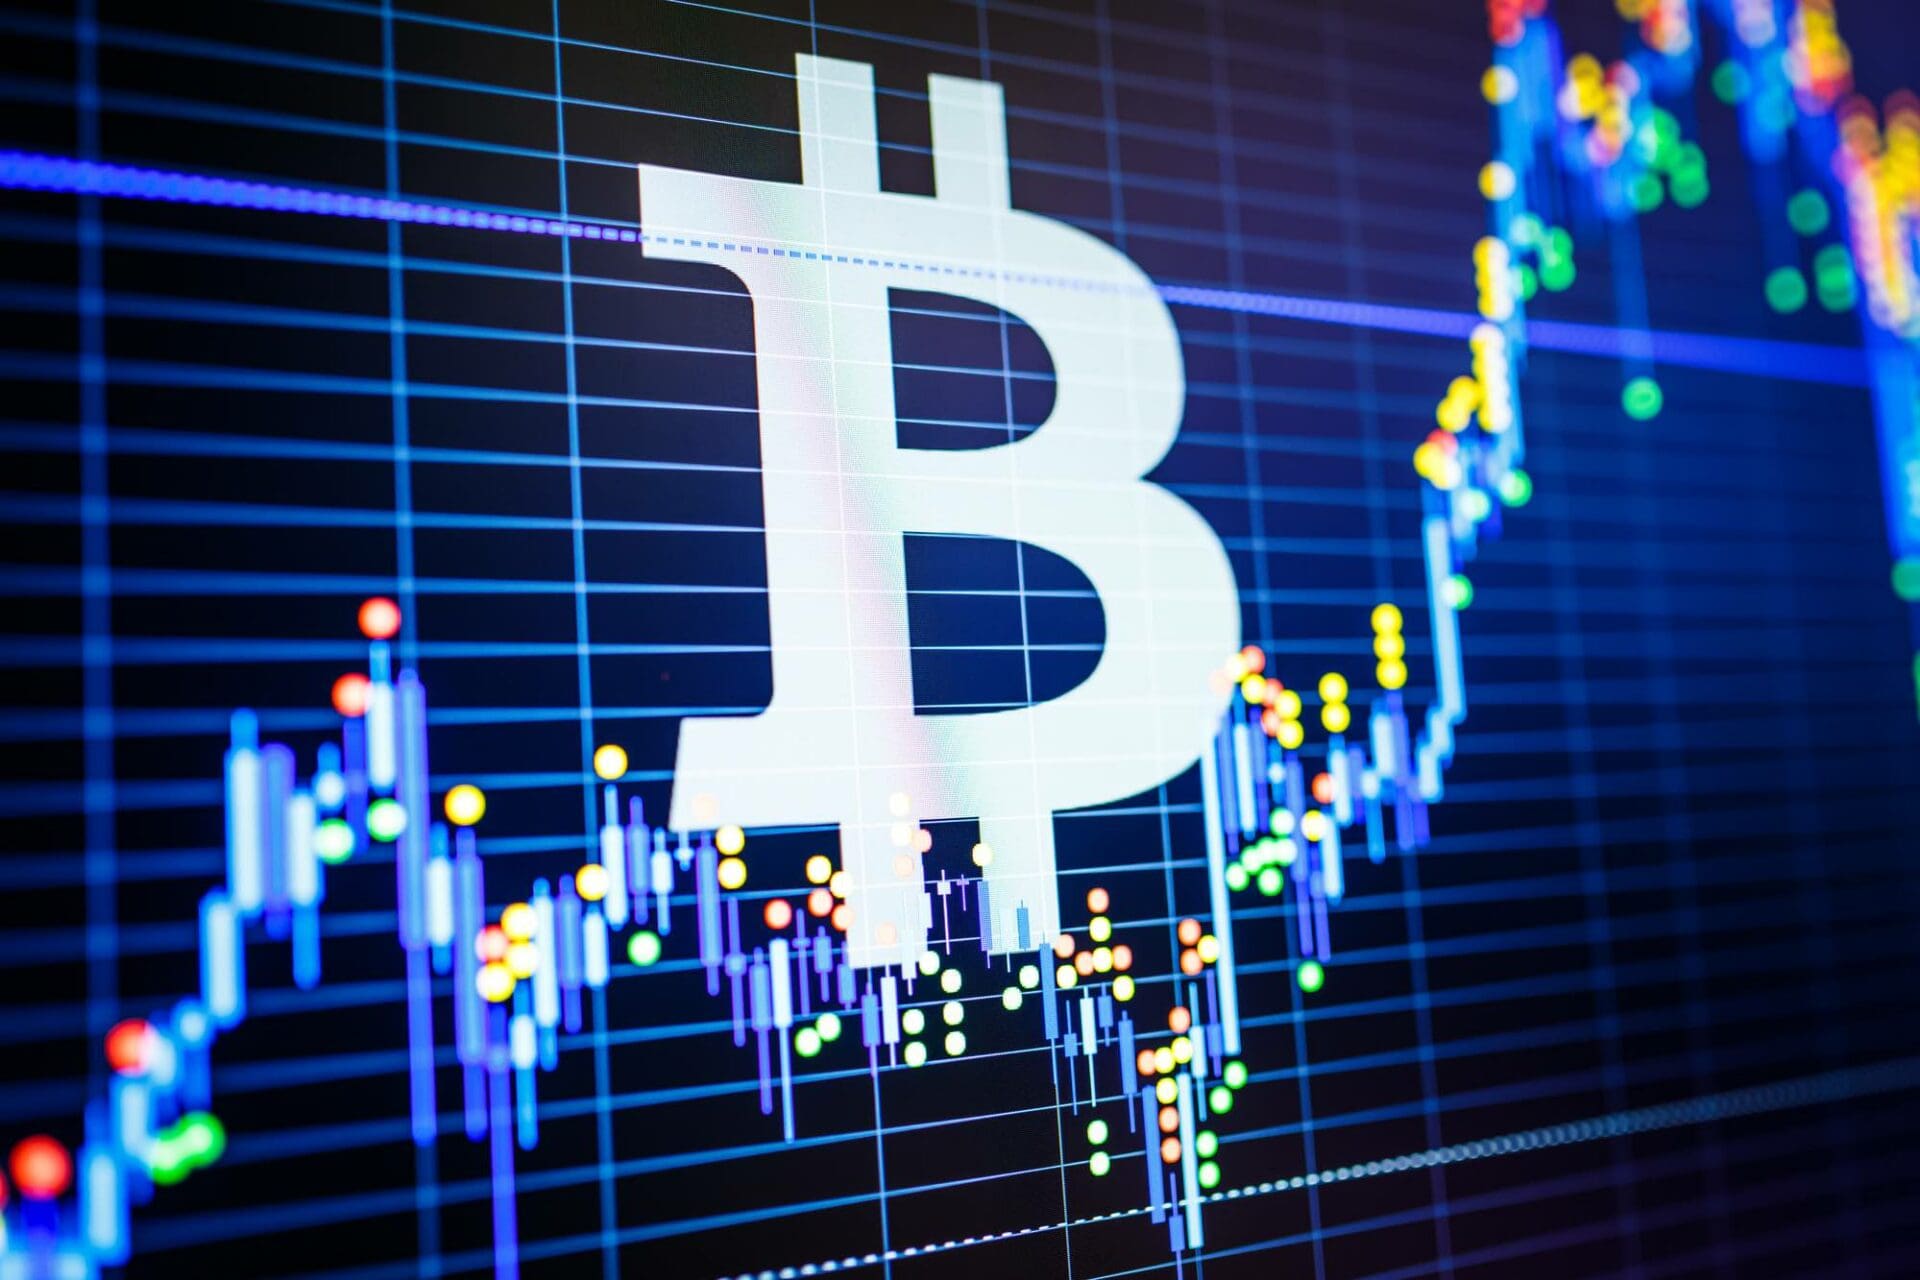 Bitcoin guida ancora investimenti crypto: $570 mln di inflow